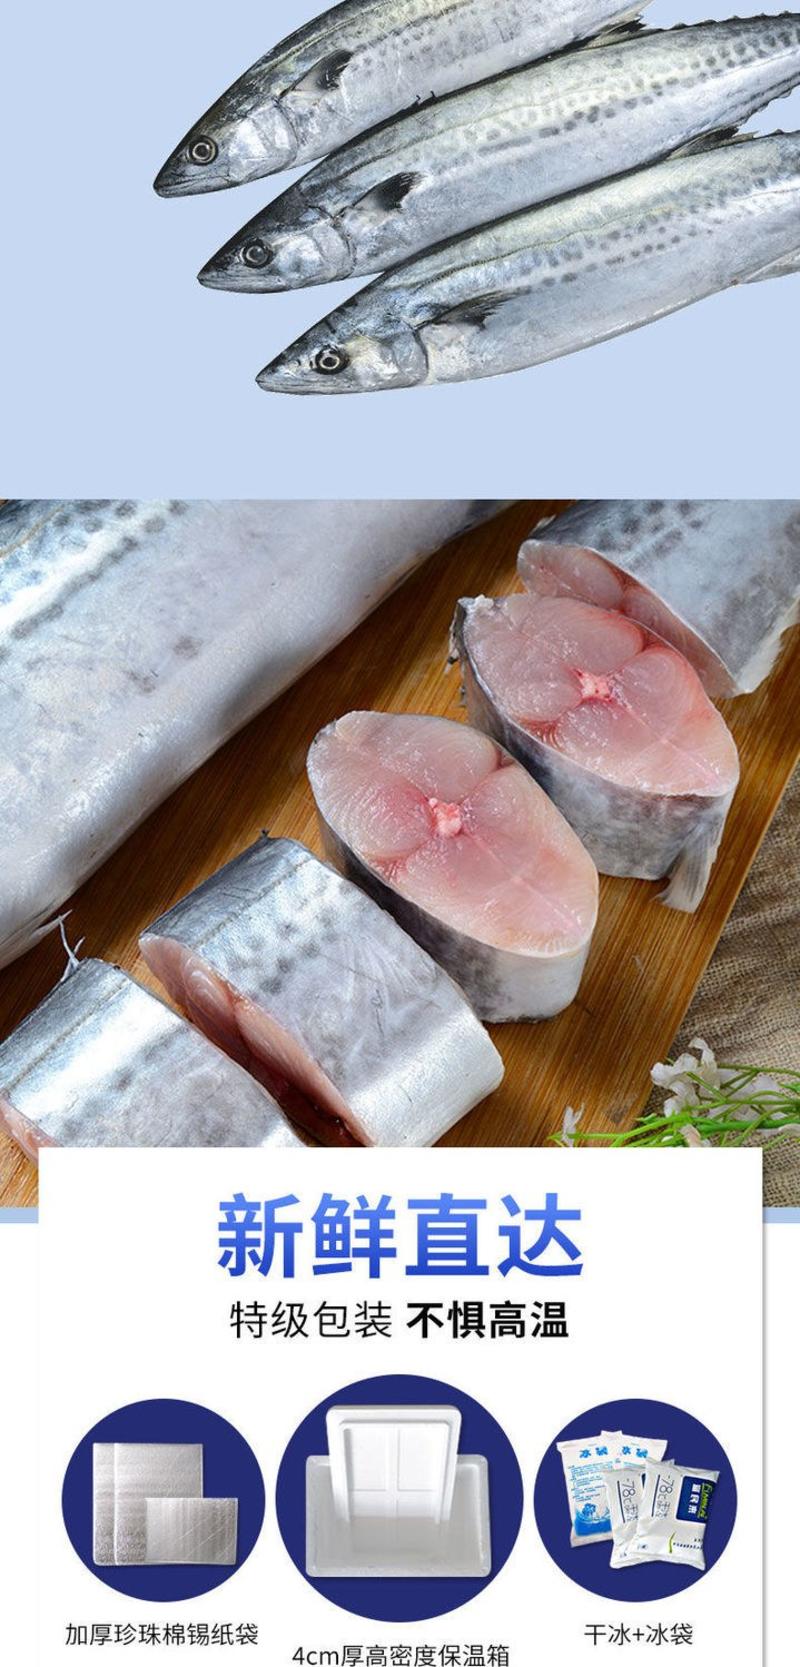 青岛大鲅鱼新鲜冷冻鲜活燕鲅鱼大马鲛鱼馅饺子深海鱼